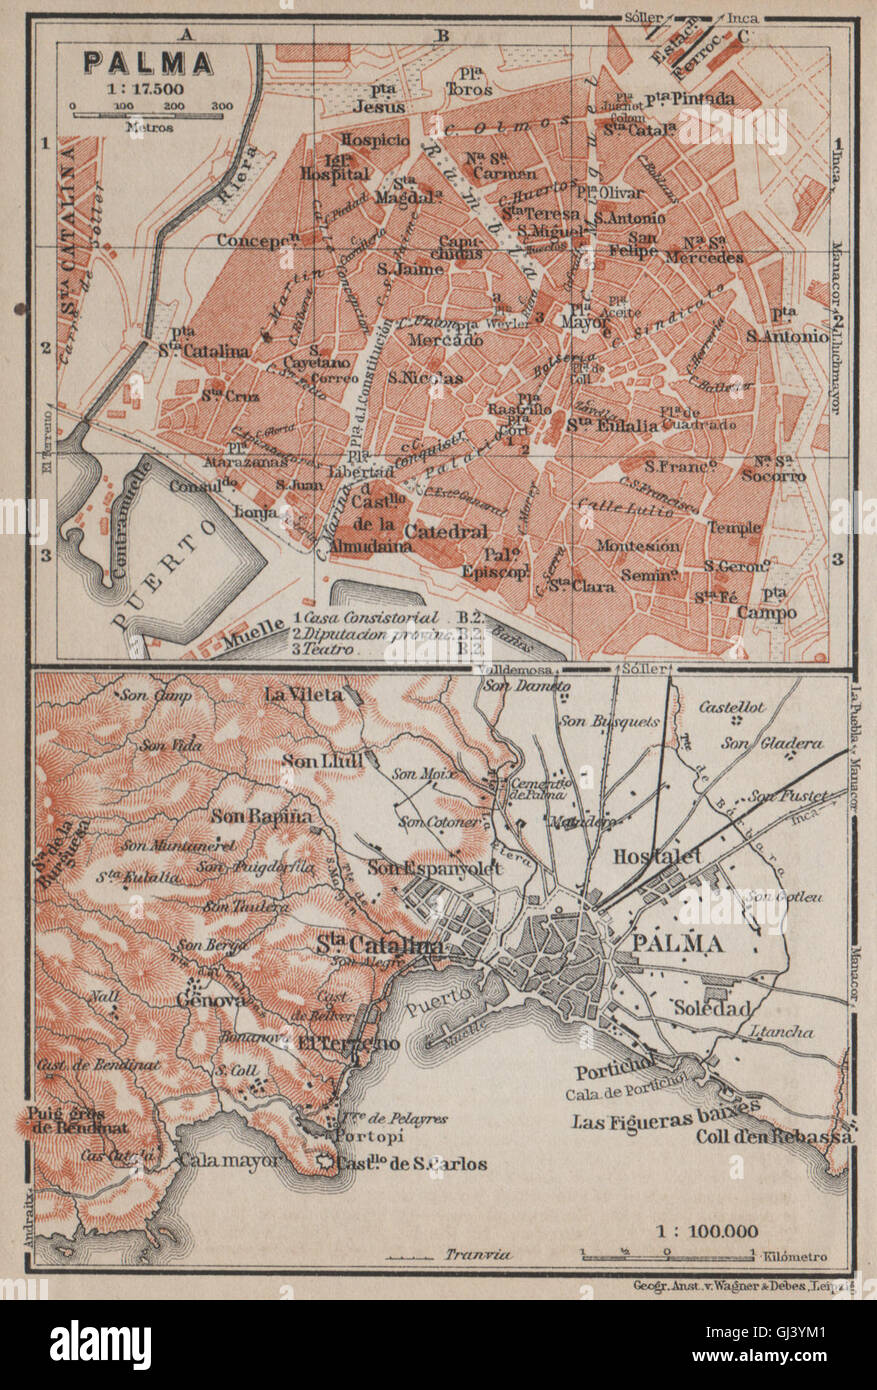 PALMA DE MALLORCA town city plan & environs. Majorca. Spain España, 1913 map Stock Photo